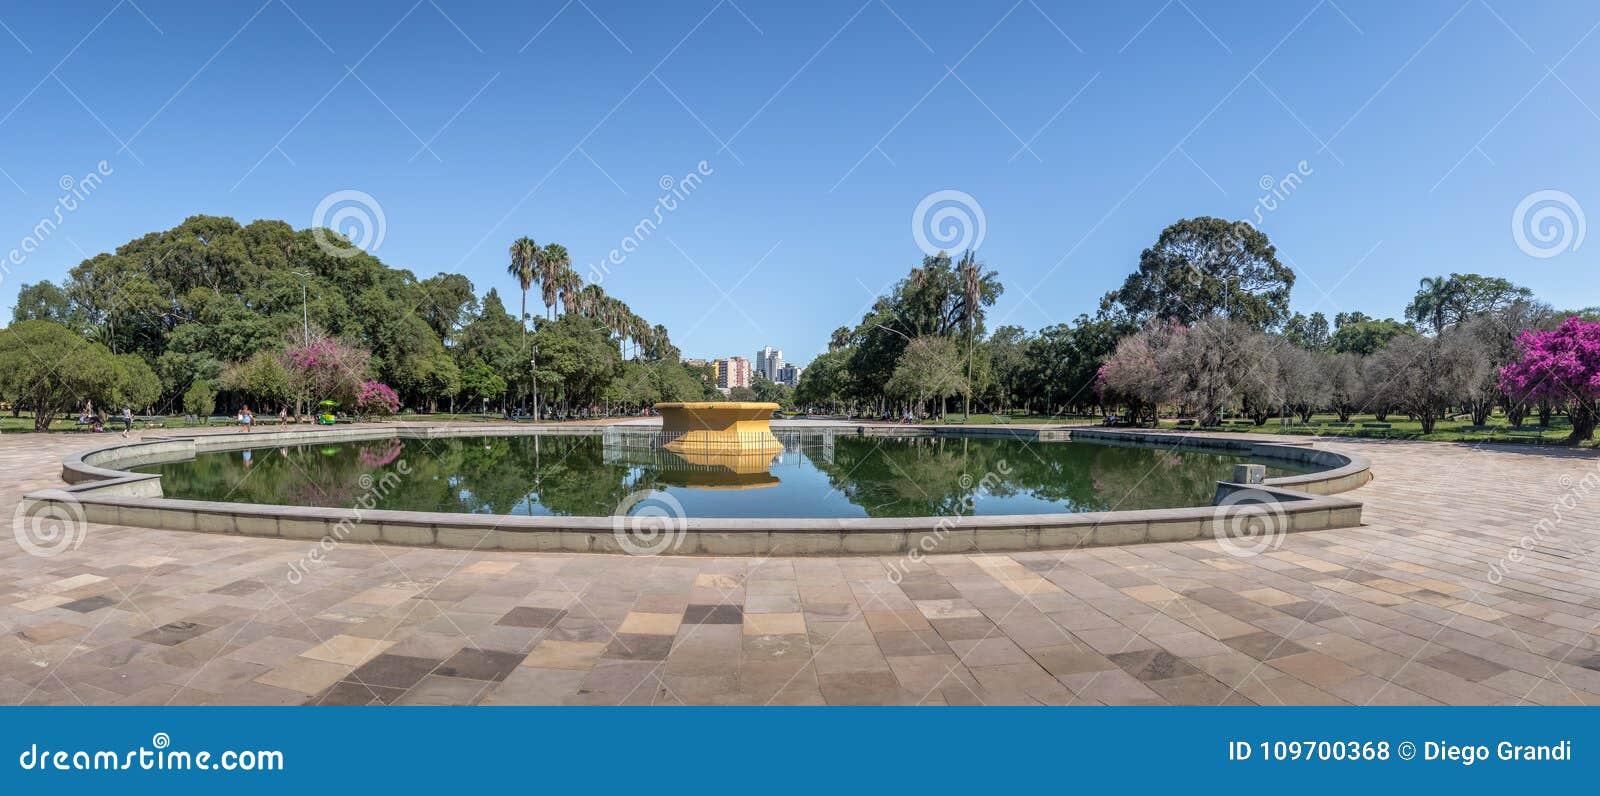 panoramic view of farroupilha park or redencao park fountain in - porto alegre, rio grande do sul, brazil